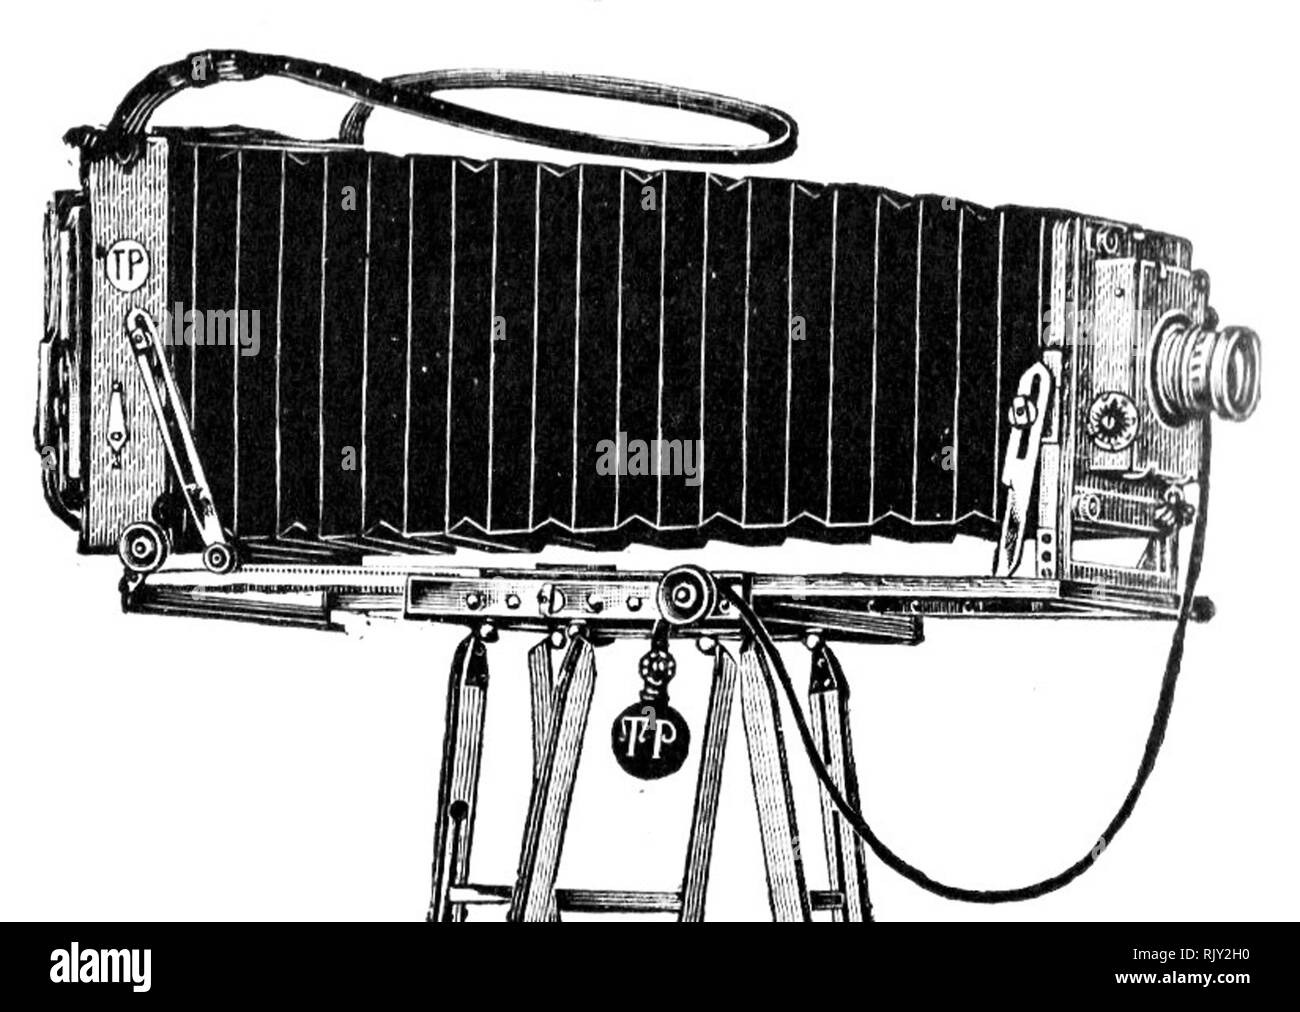 Jahrgang alte fotografische Platte Kamera - dies wurde von Thornton Pickard, der 1888 gegründet wurde. Es ist wie ein langes Feld Nebenstelle Kamera beschrieben. Stockfoto